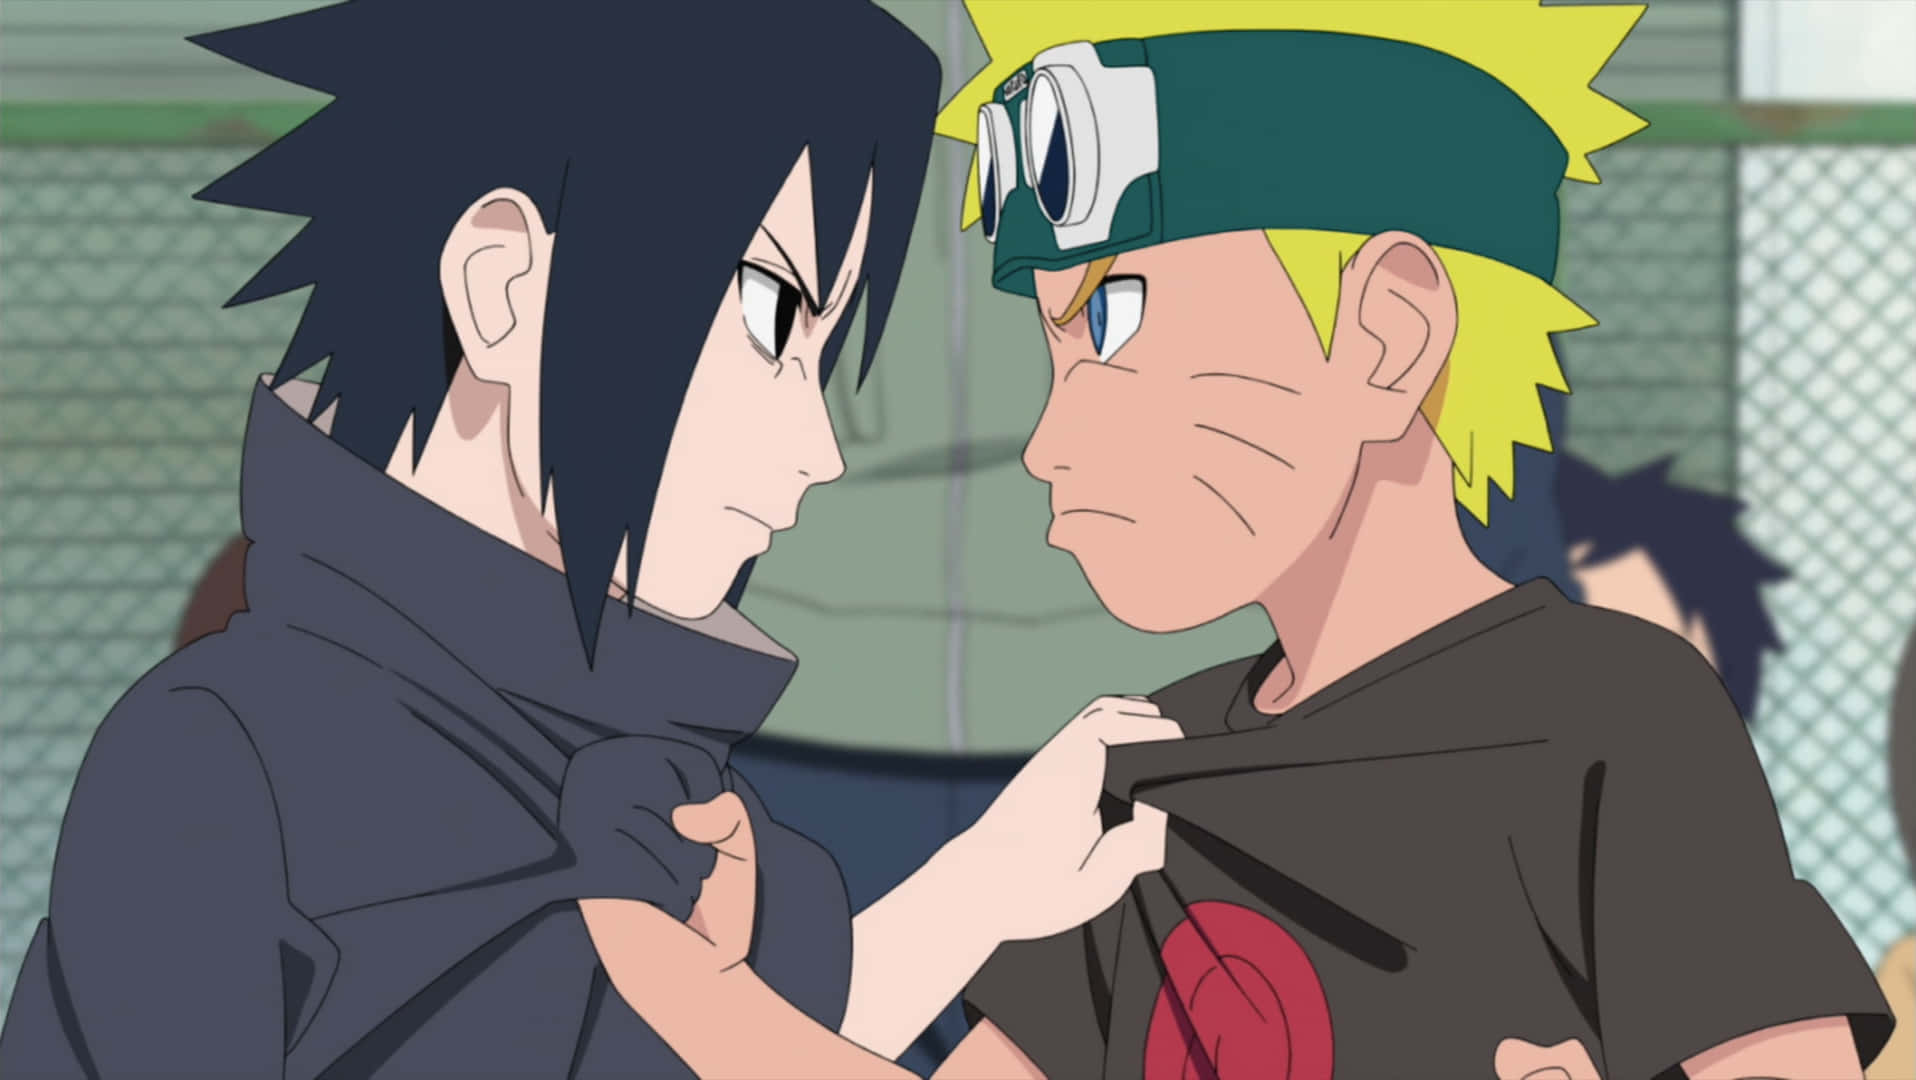 Imágenesde Sasuke Naruto Atrapando